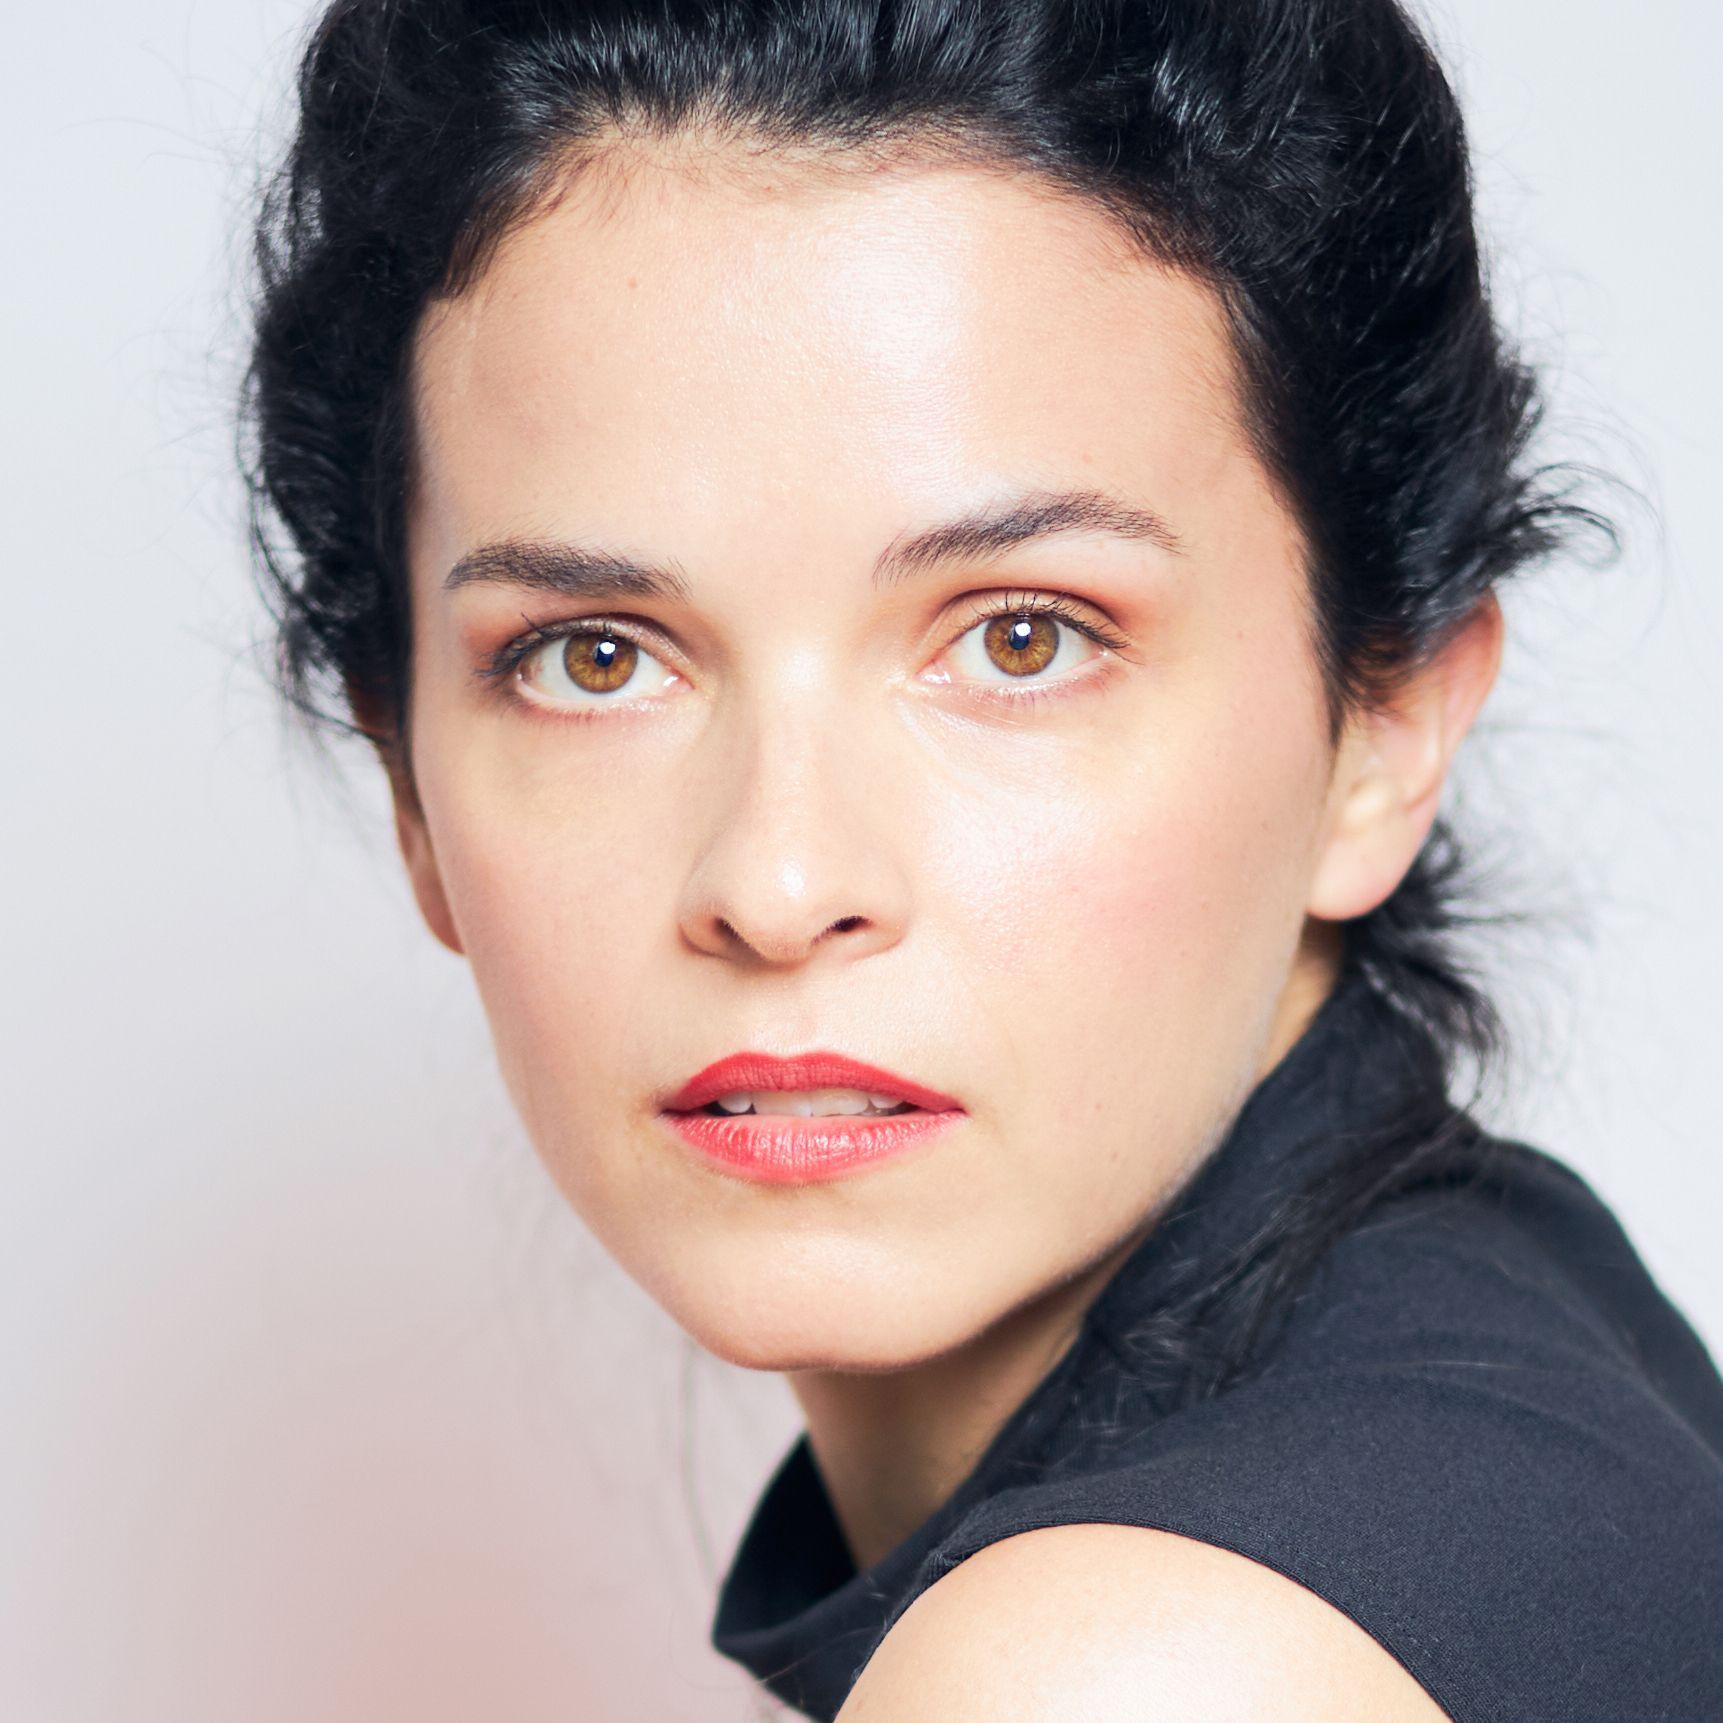 Profile Photo of Maxine Kazis by Sasha Ilushina